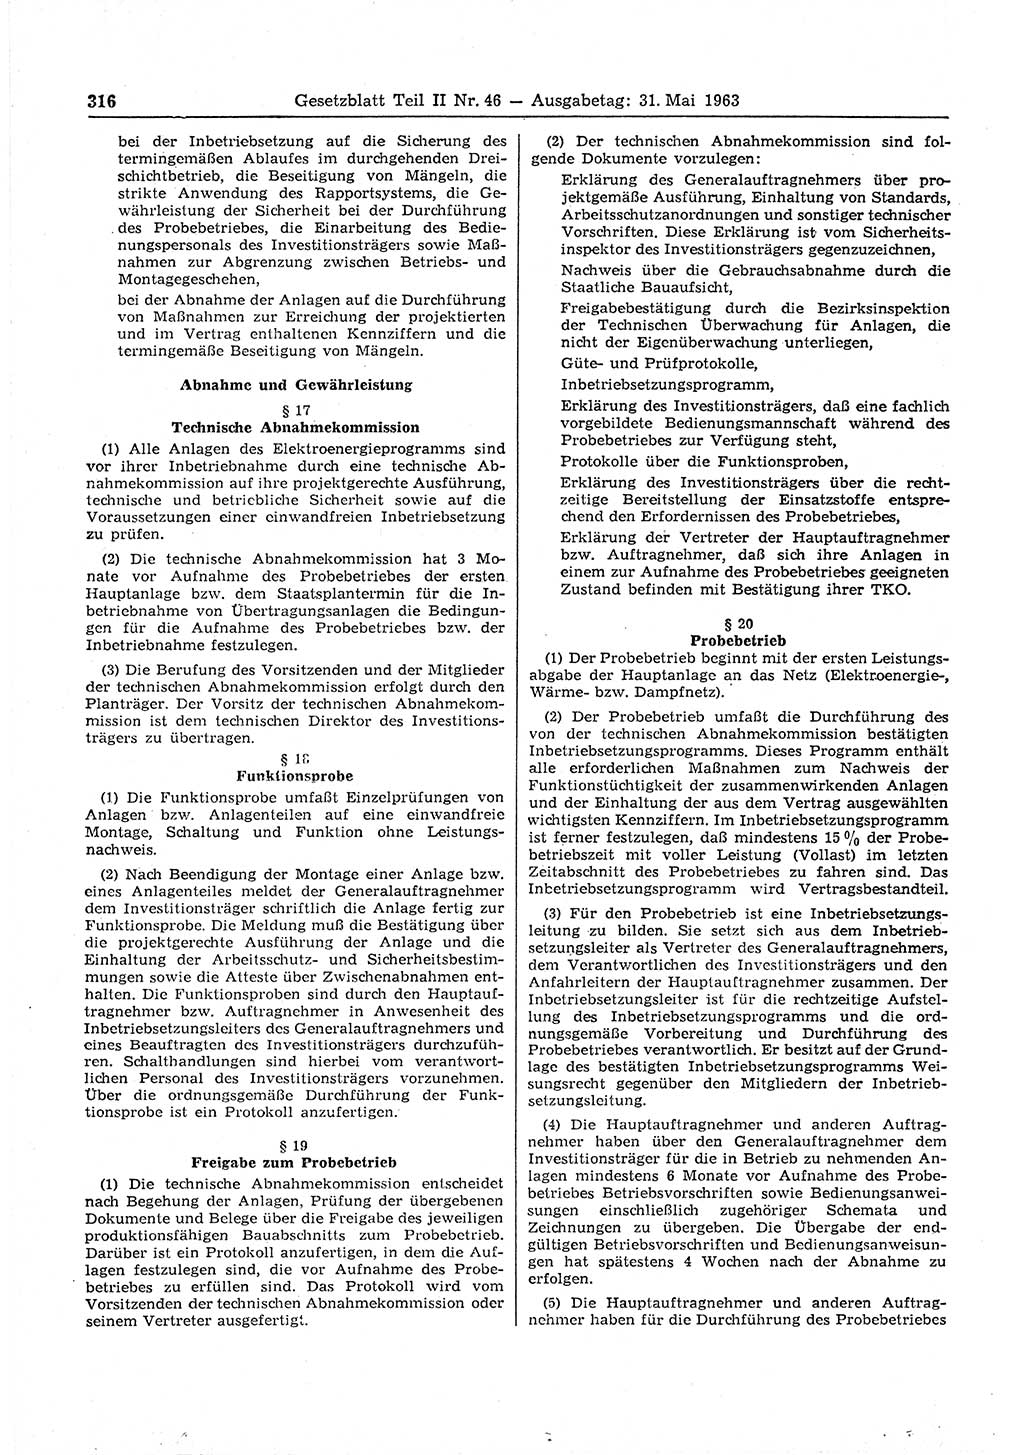 Gesetzblatt (GBl.) der Deutschen Demokratischen Republik (DDR) Teil ⅠⅠ 1963, Seite 316 (GBl. DDR ⅠⅠ 1963, S. 316)